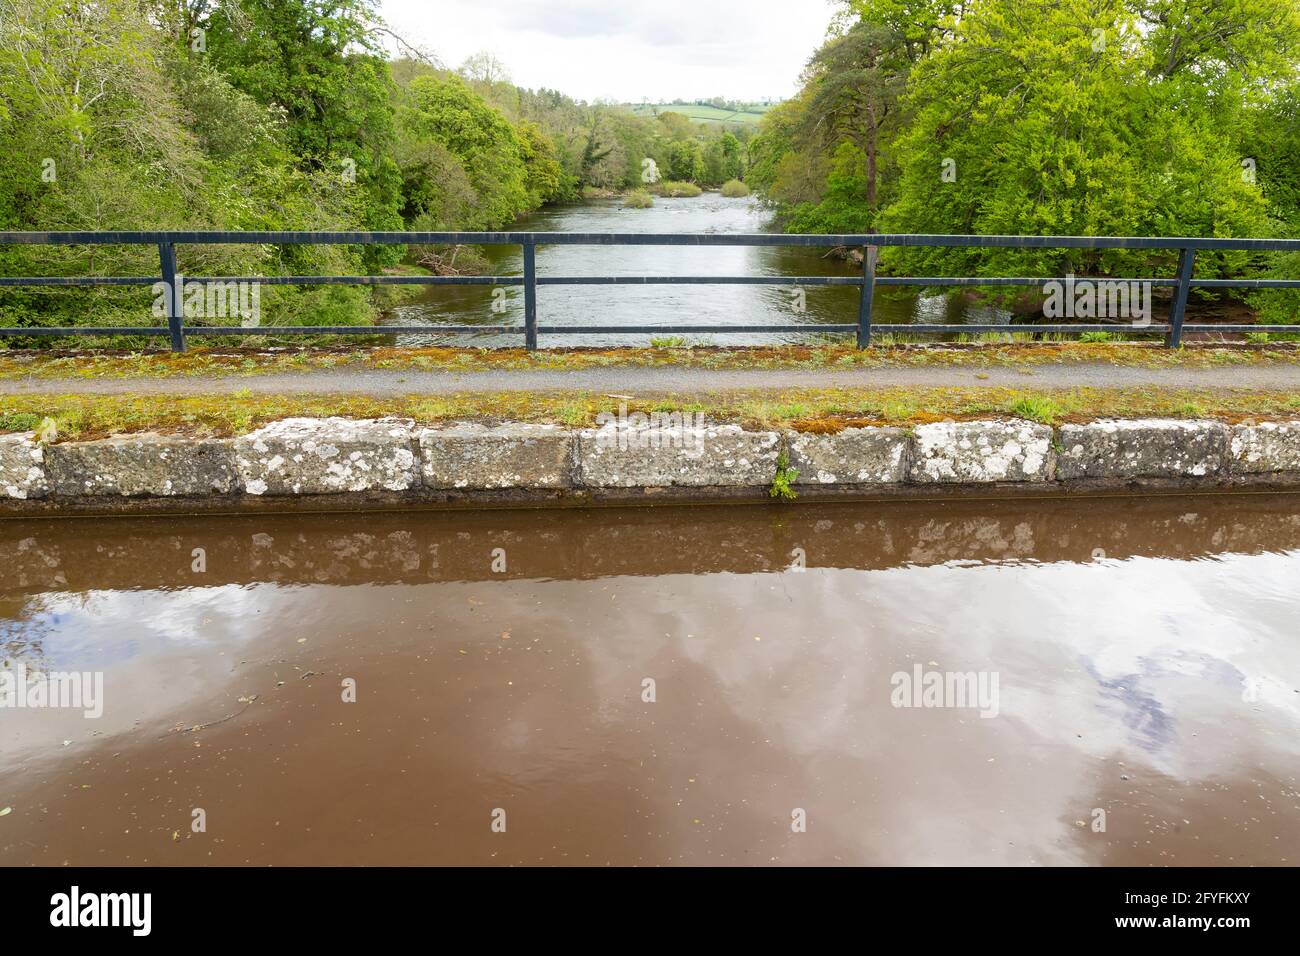 Rivière Usk, vue de l'aqueduc de Brynich, près de Brecon sur le Monbucshire et canal de Brecon, Powys, pays de Galles, Royaume-Uni Banque D'Images